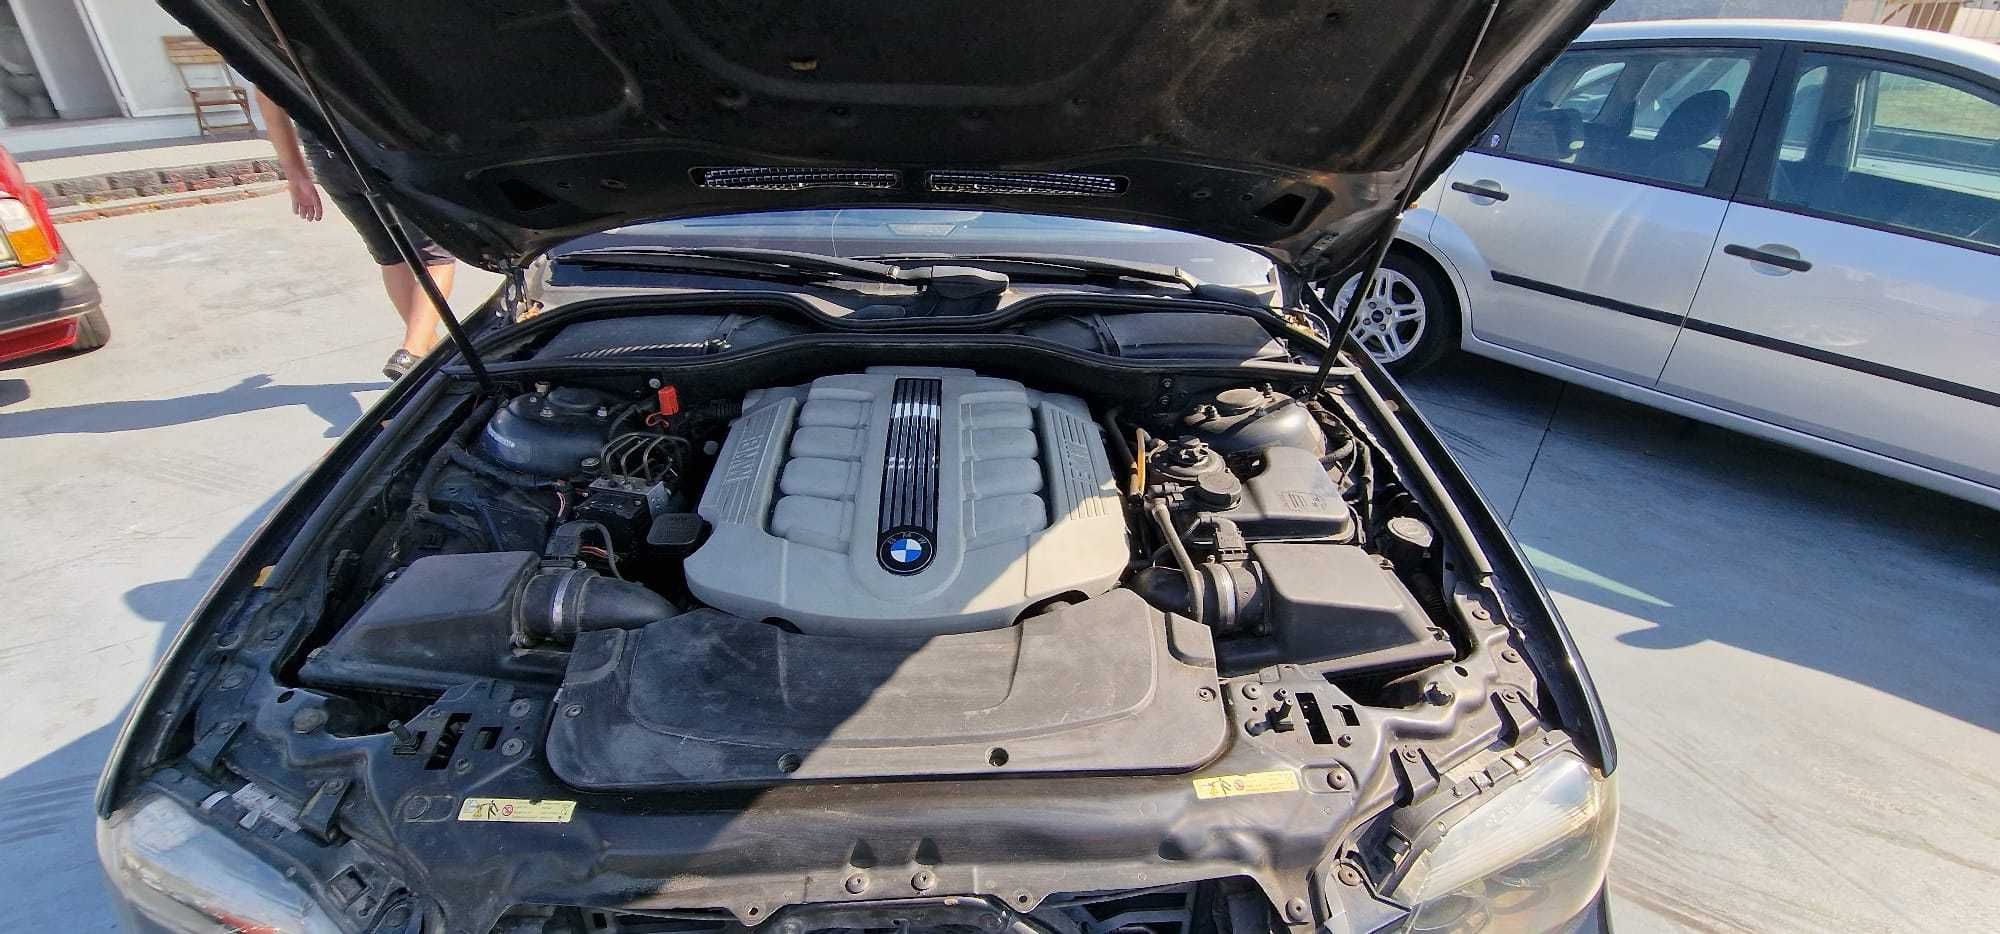 BMW 745d motor v8 330 hp